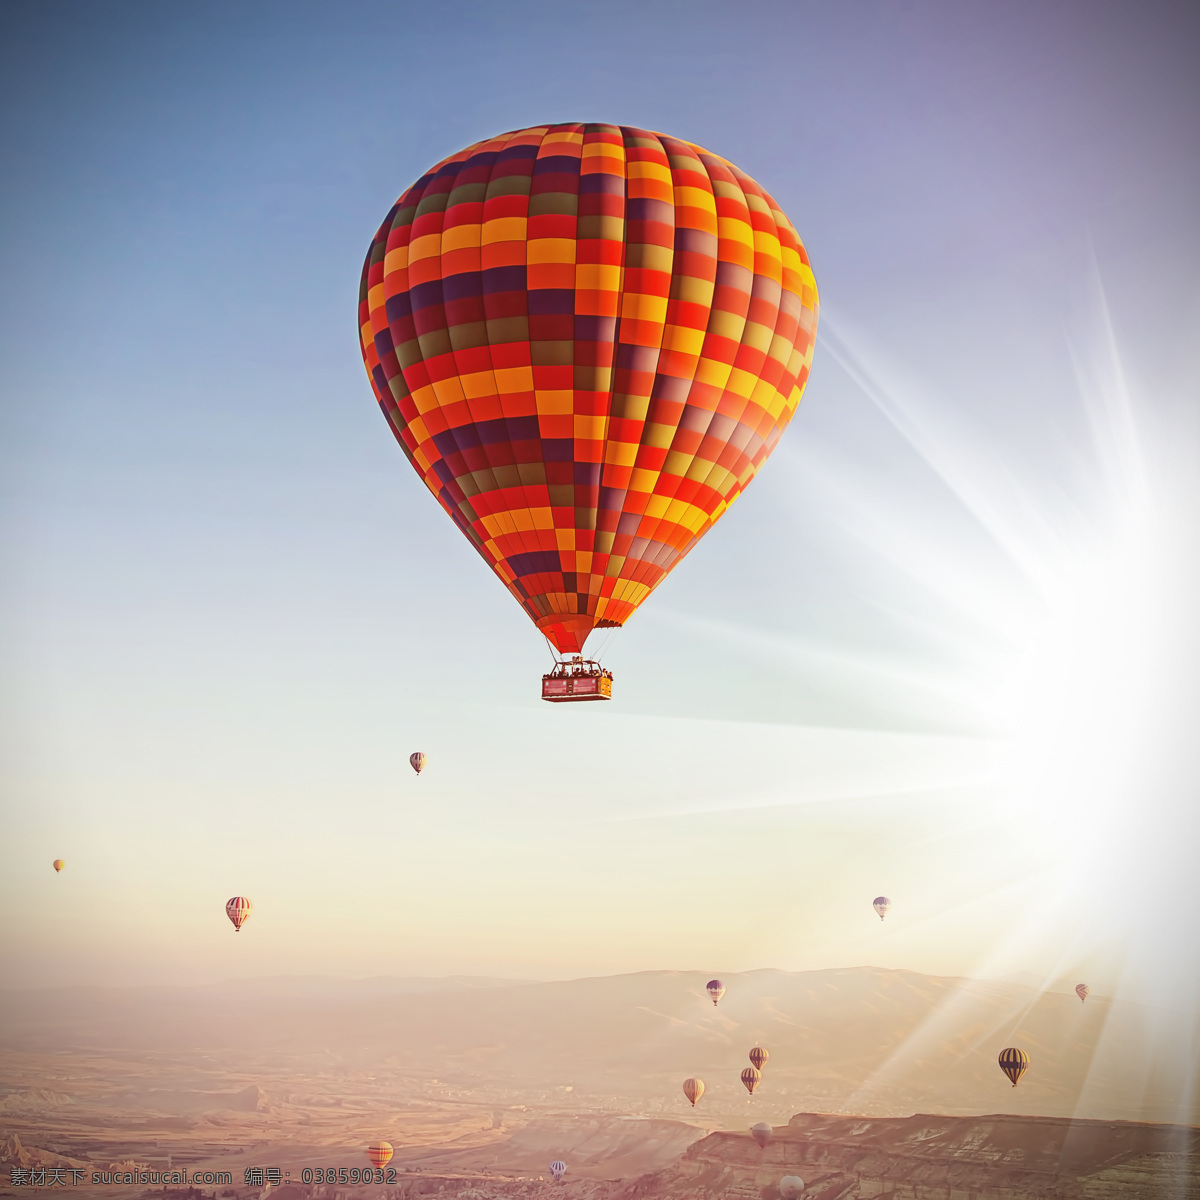 空中 热气球 阳光 空中热气球 天空 旅行 轻气球 自然风景 其他类别 生活百科 白色